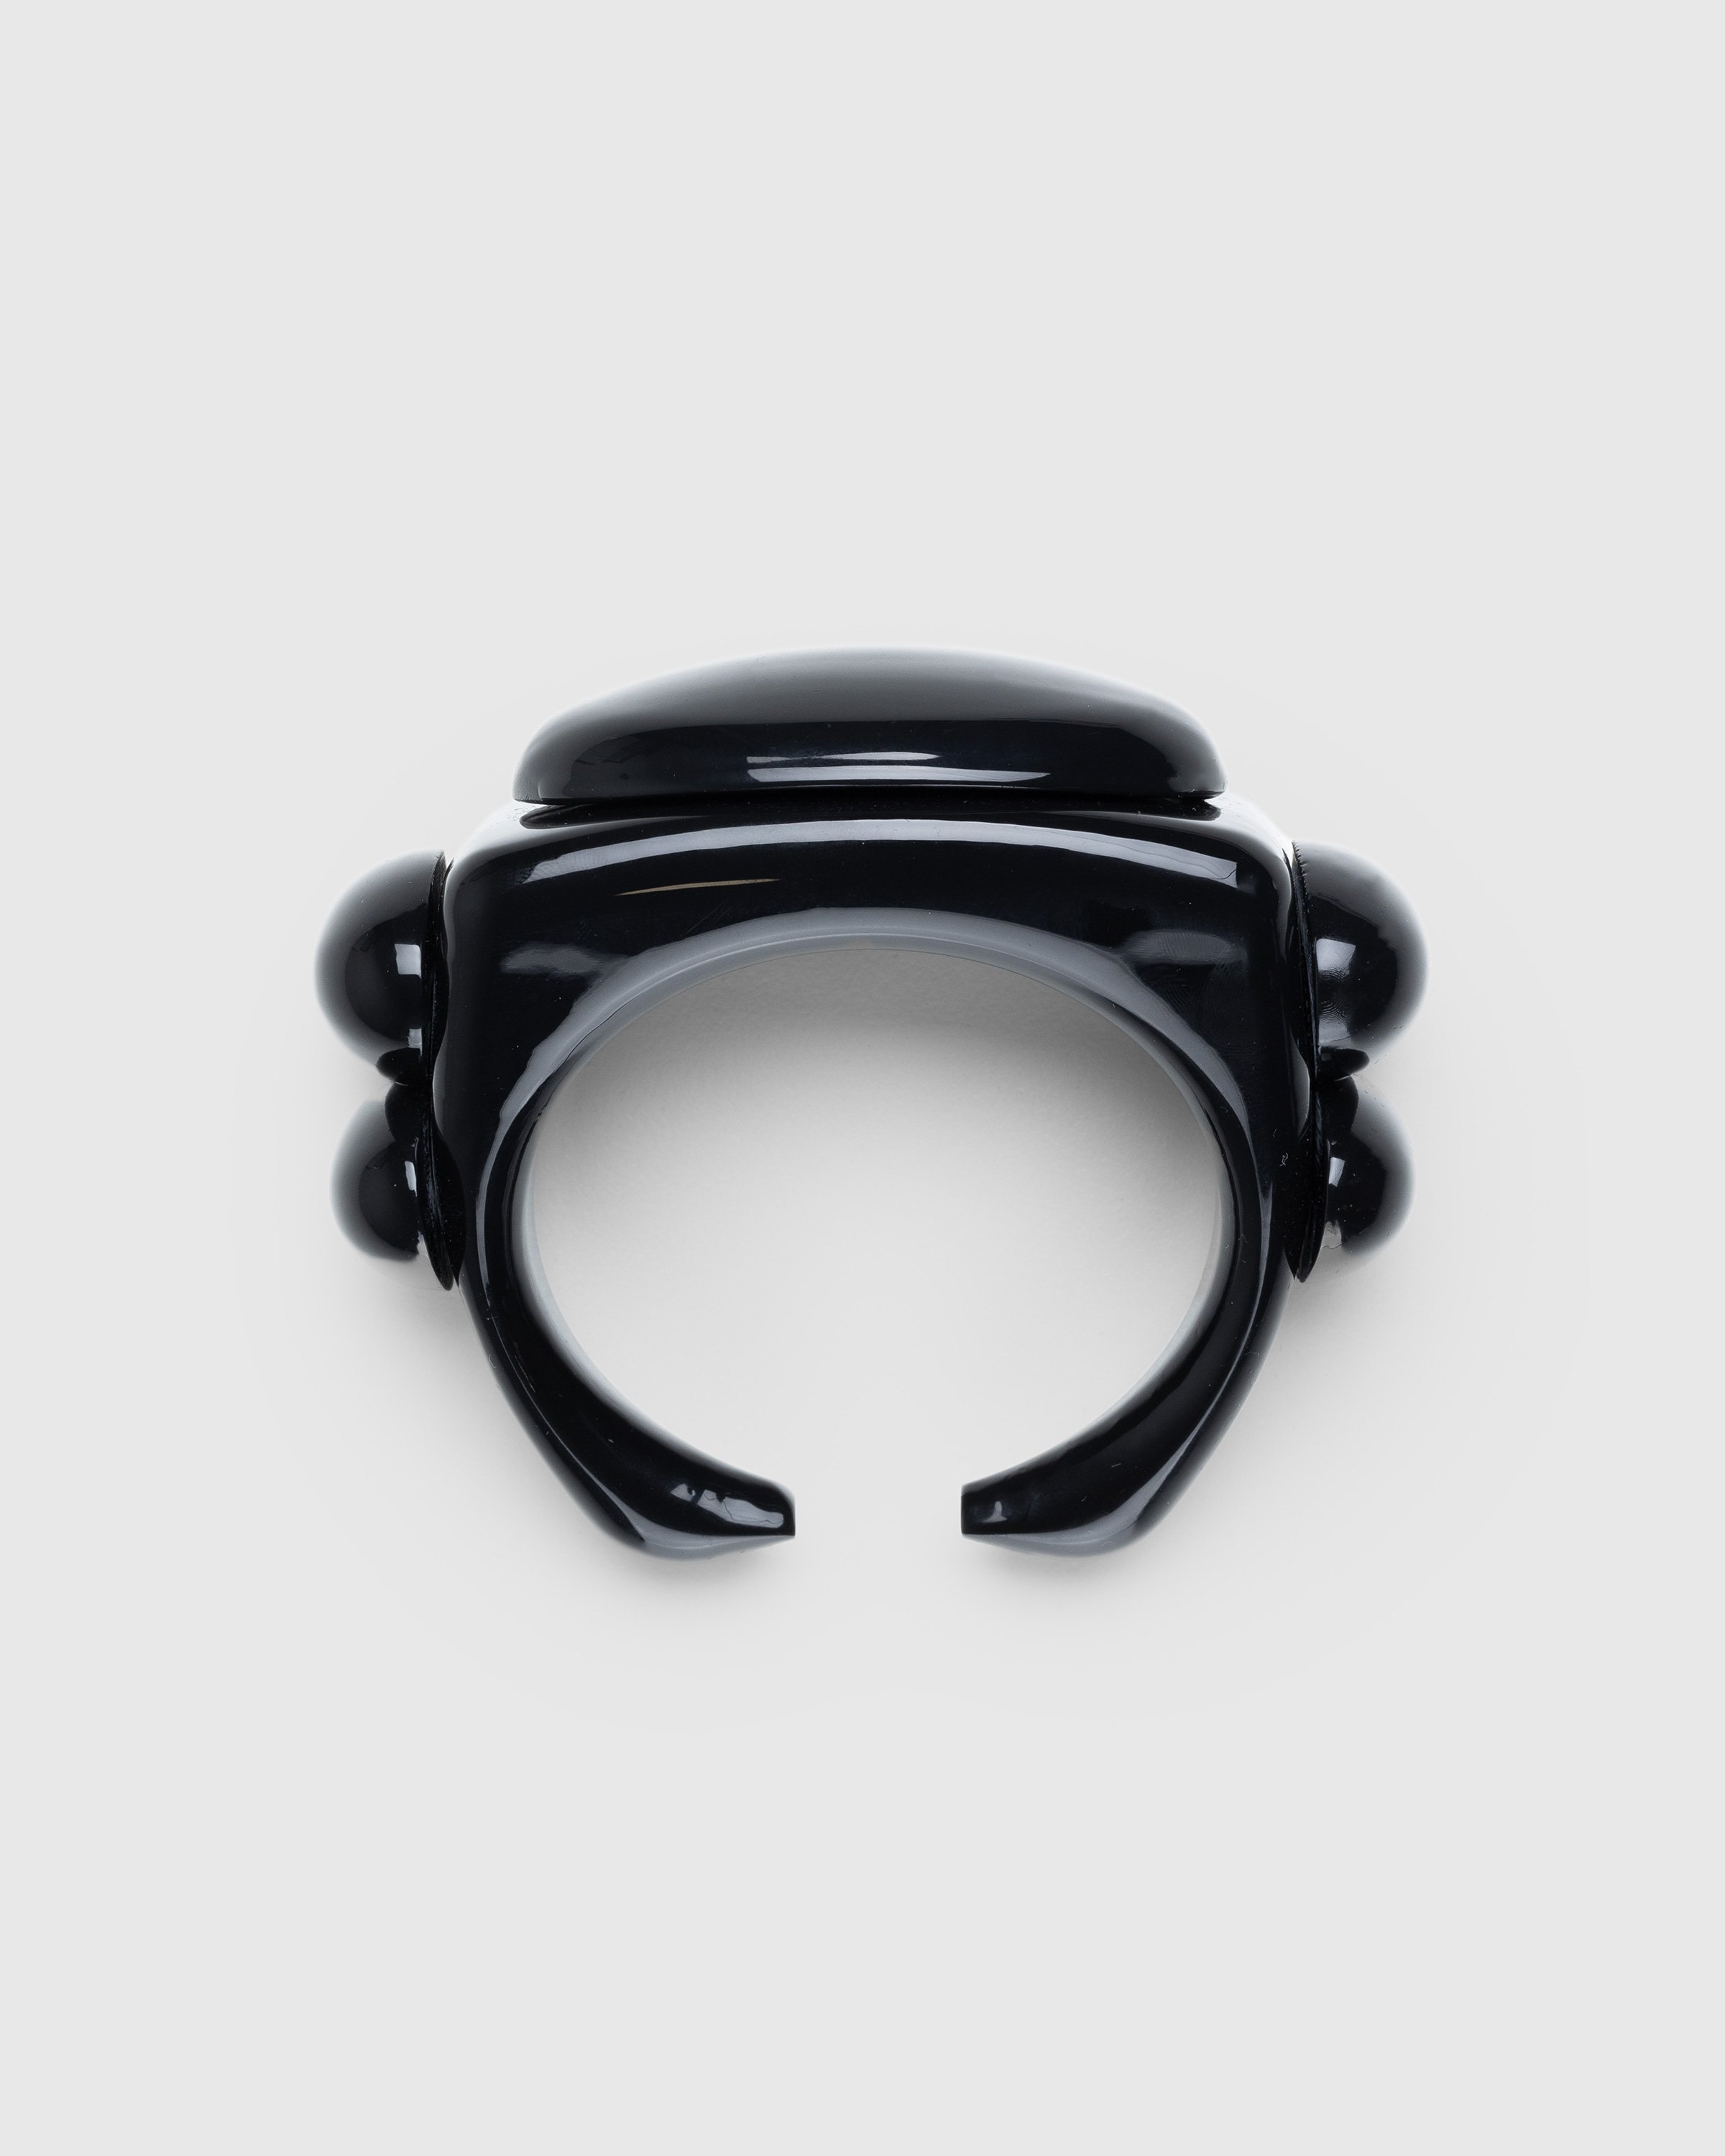 Jean Paul Gaultier - Shiny Square Bracelet Black - Accessories - Black - Image 2